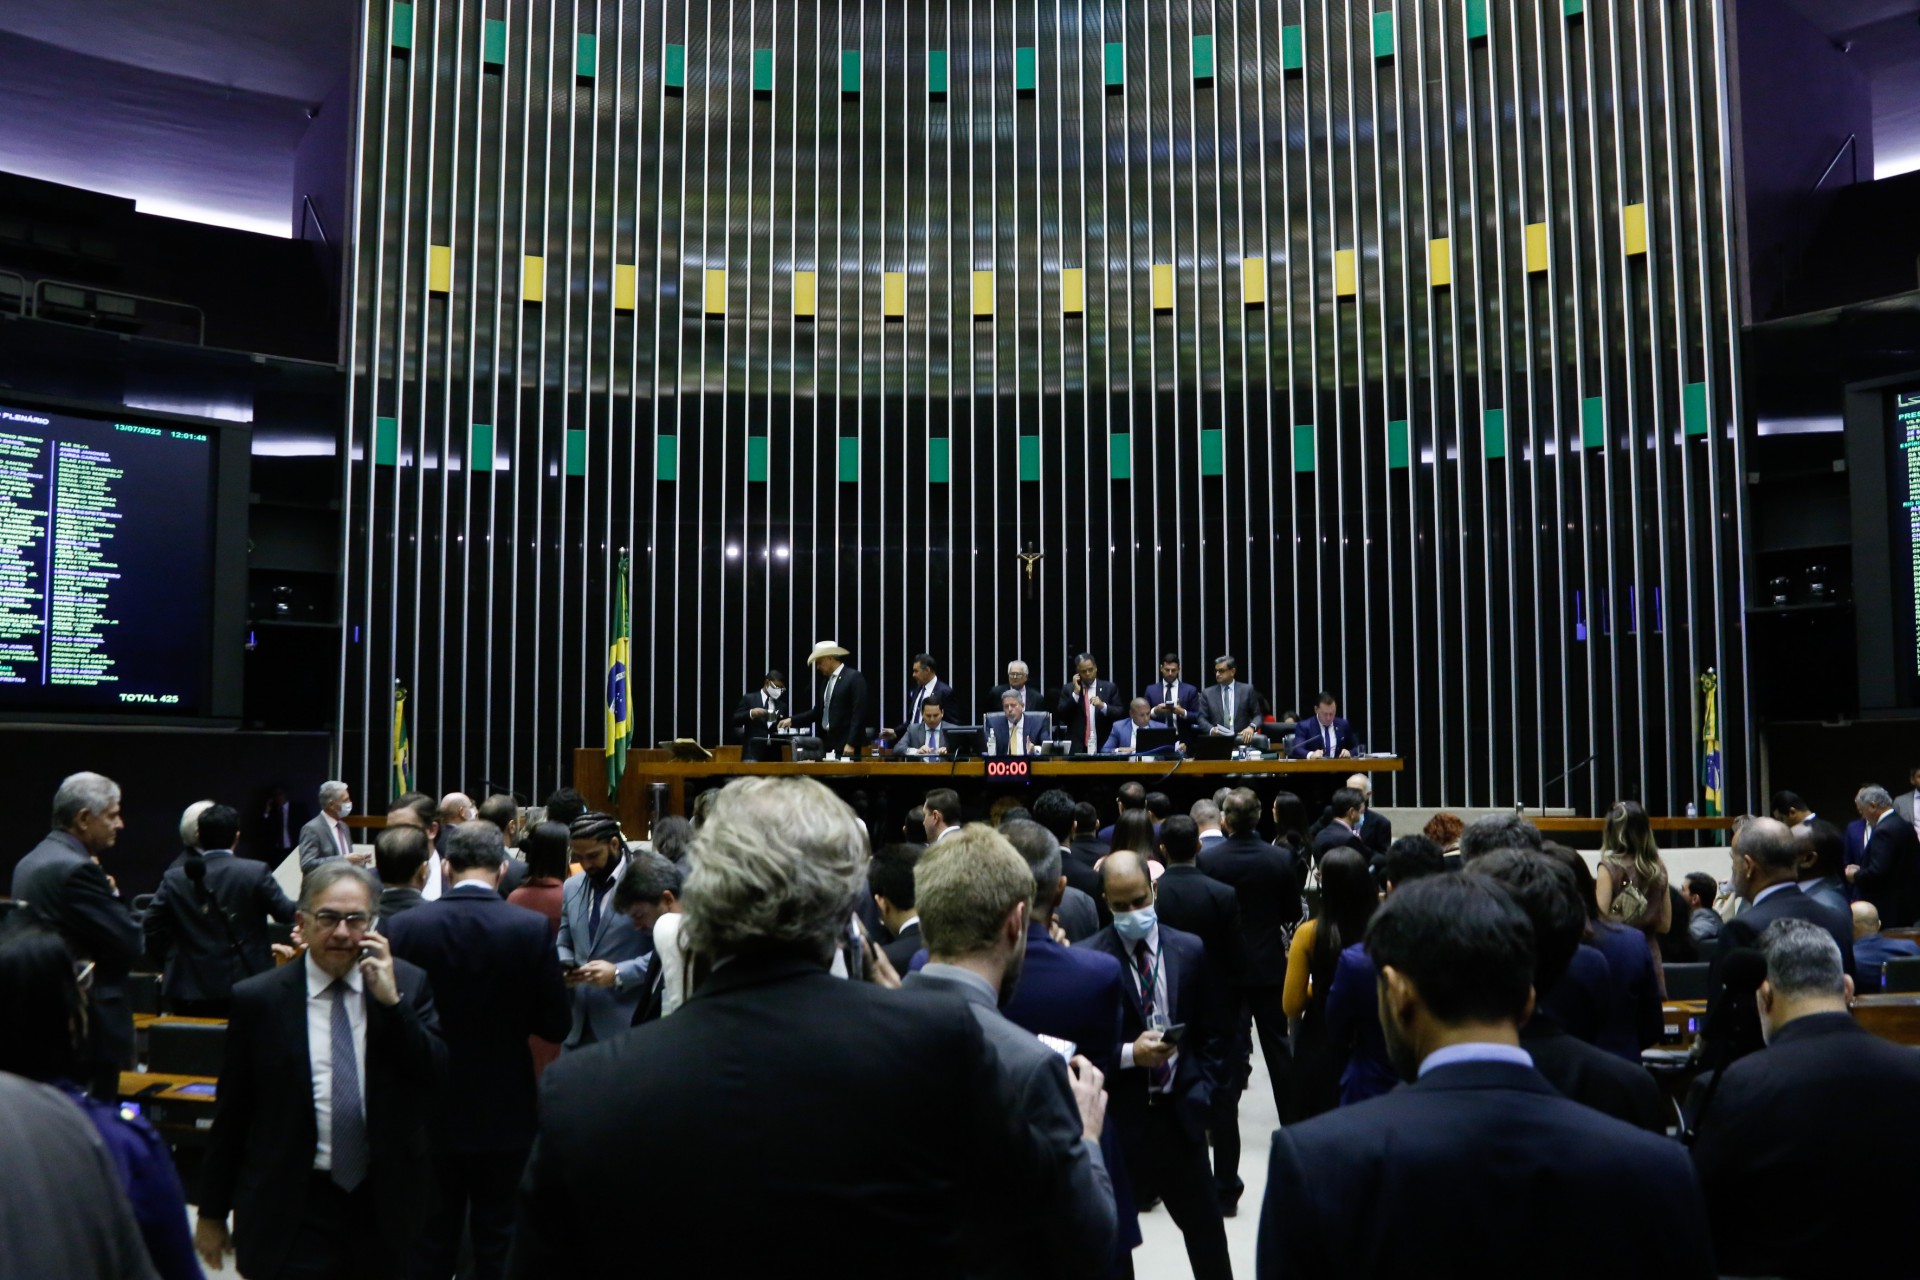 Parlamentares no Plenário da Câmara dos Deputados durante sessão (Foto: Elaine Menke/Câmara dos Deputados)